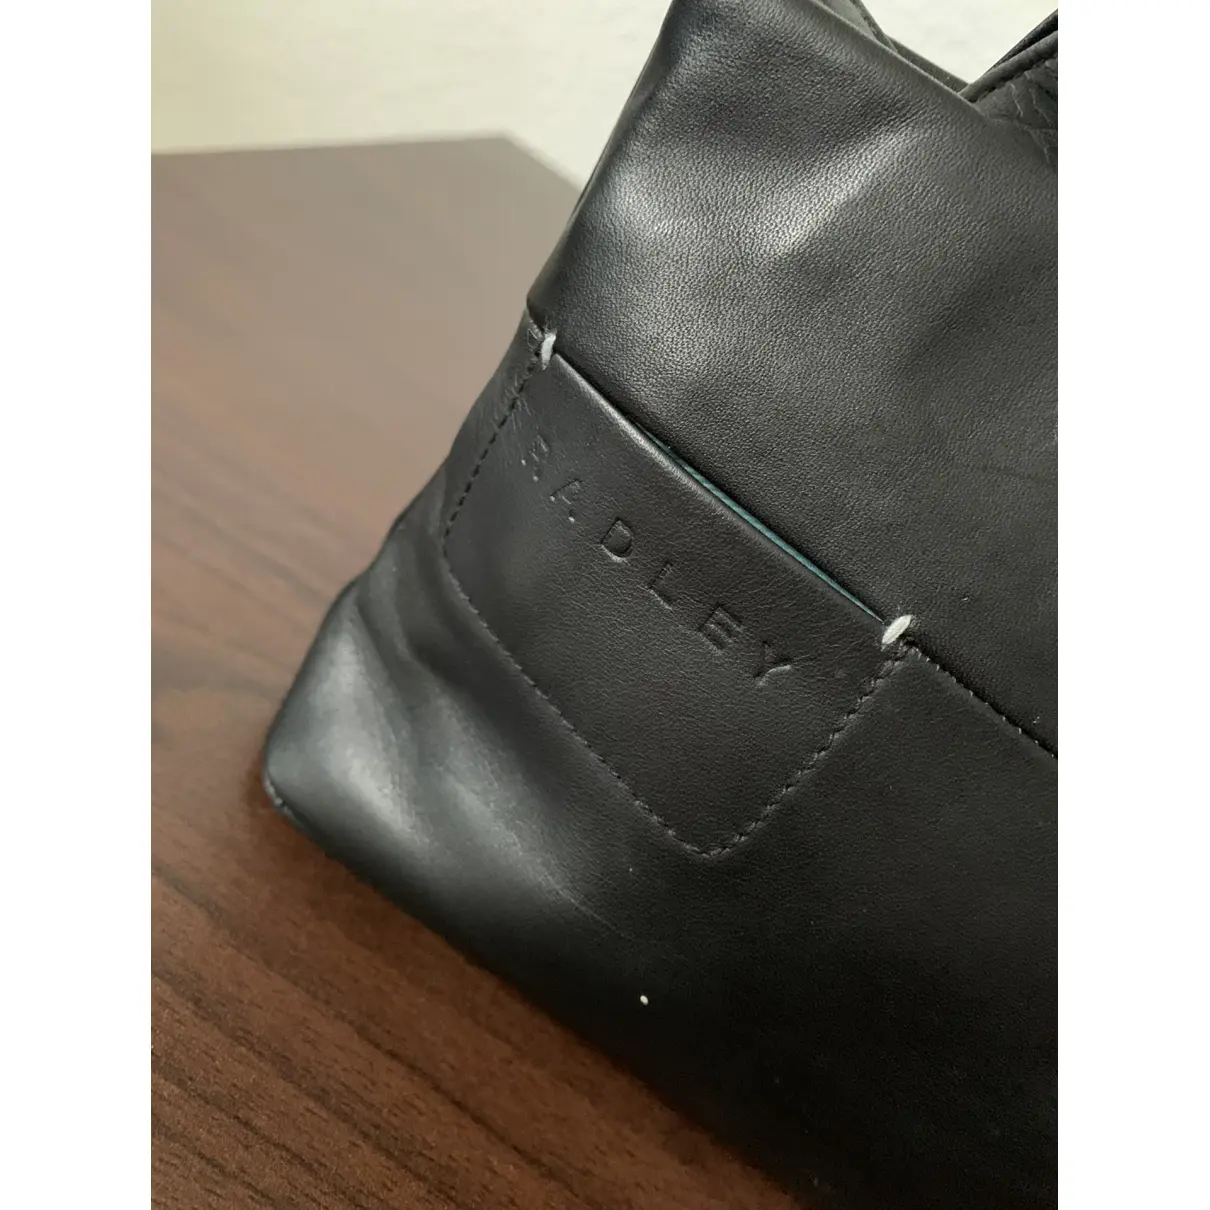 Buy Radley London Leather tote online